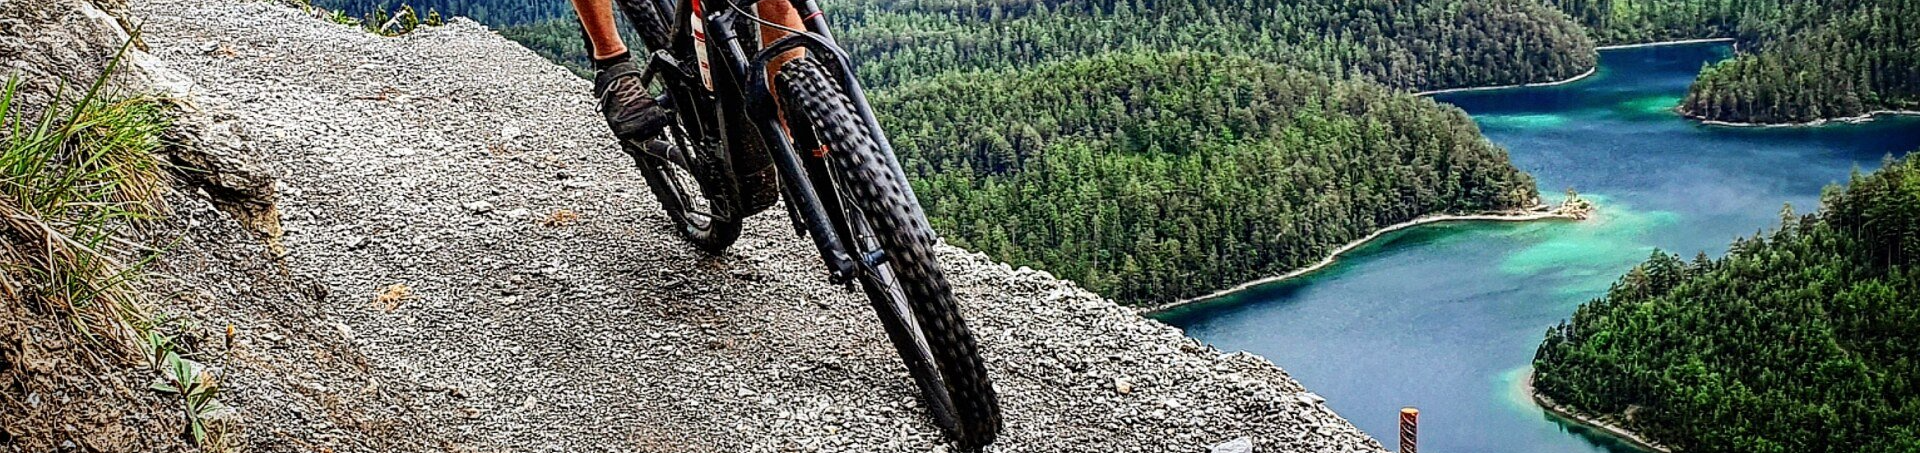 Nahaufnahme Fahrrad Vorderreifen mit Blick auf türkisfarbenes Wasser von einem Berg aus